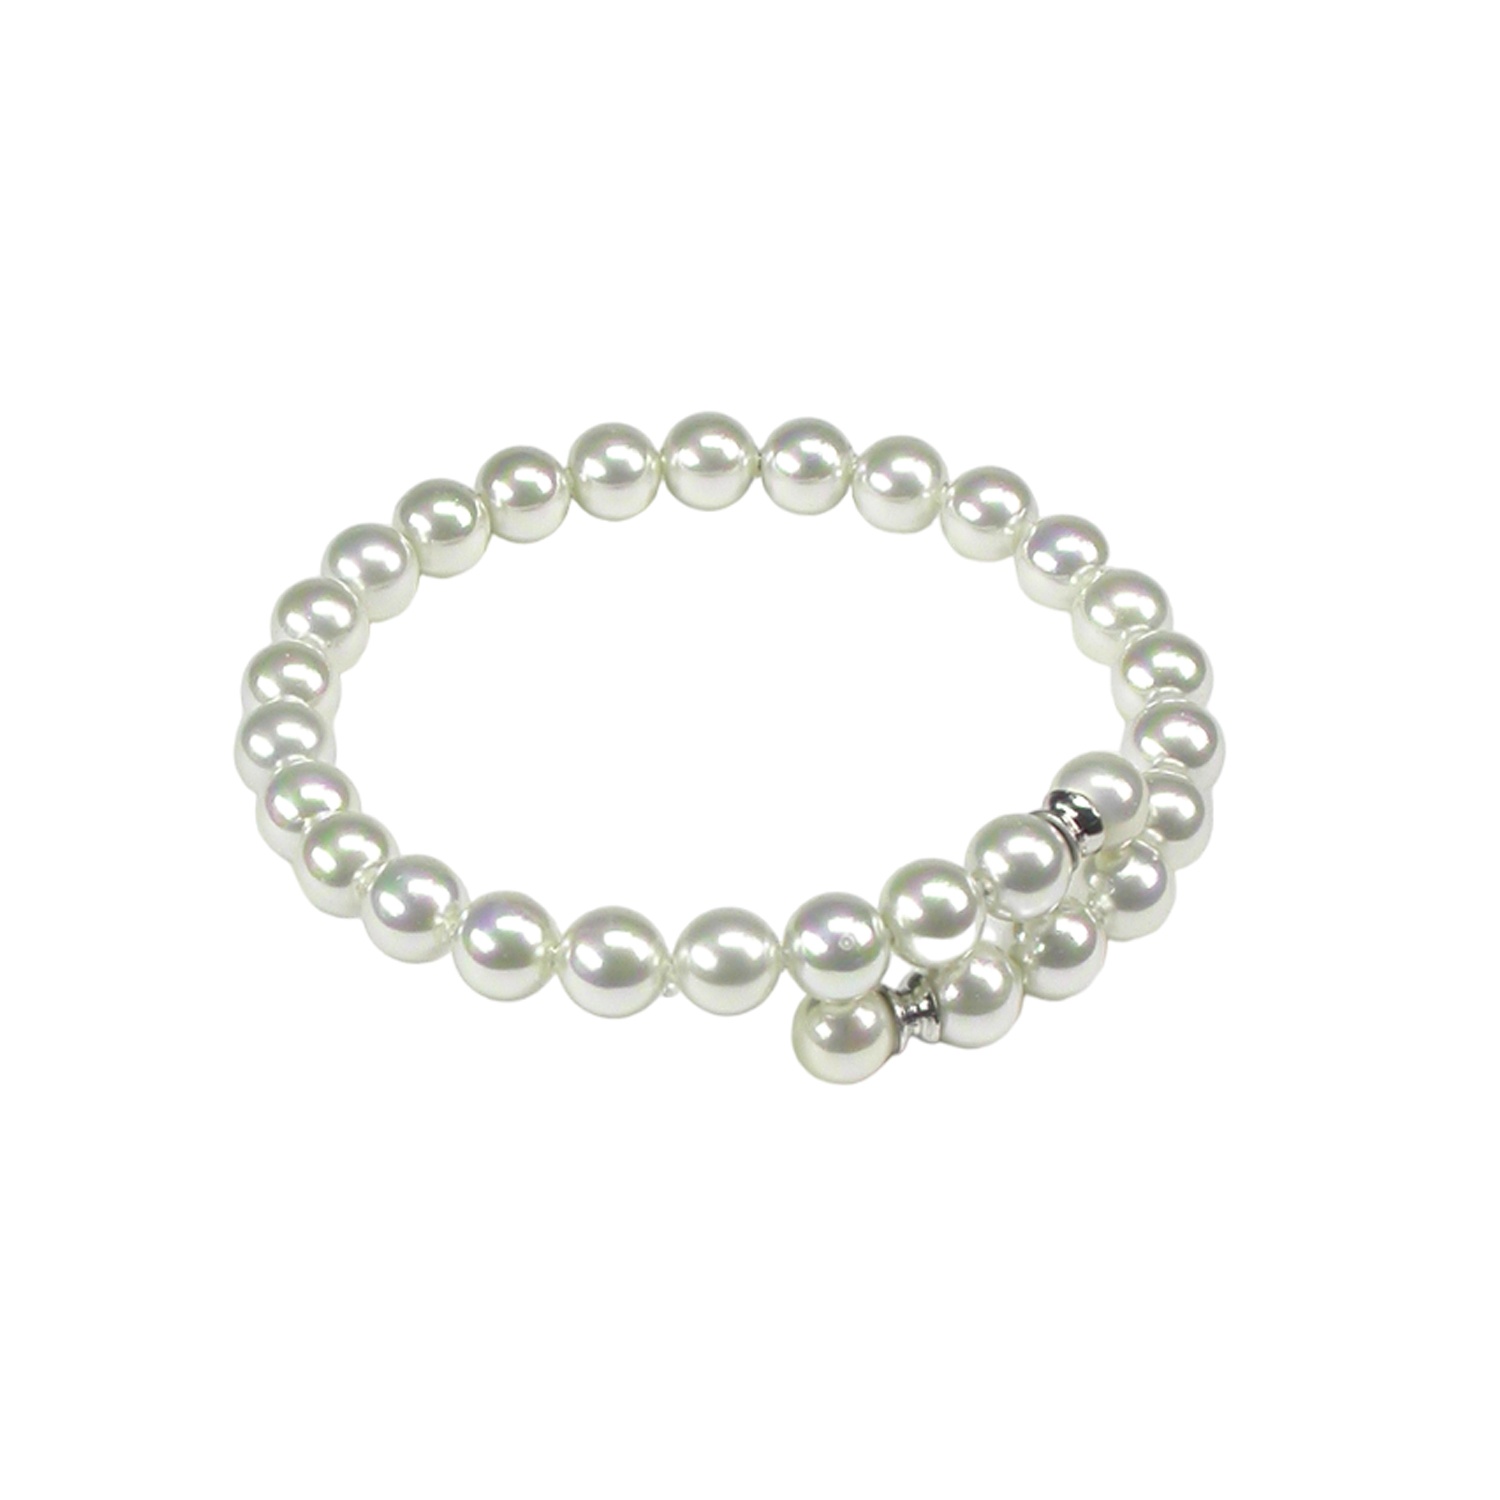 Klassisches Armband mit Perlen in Weiss.